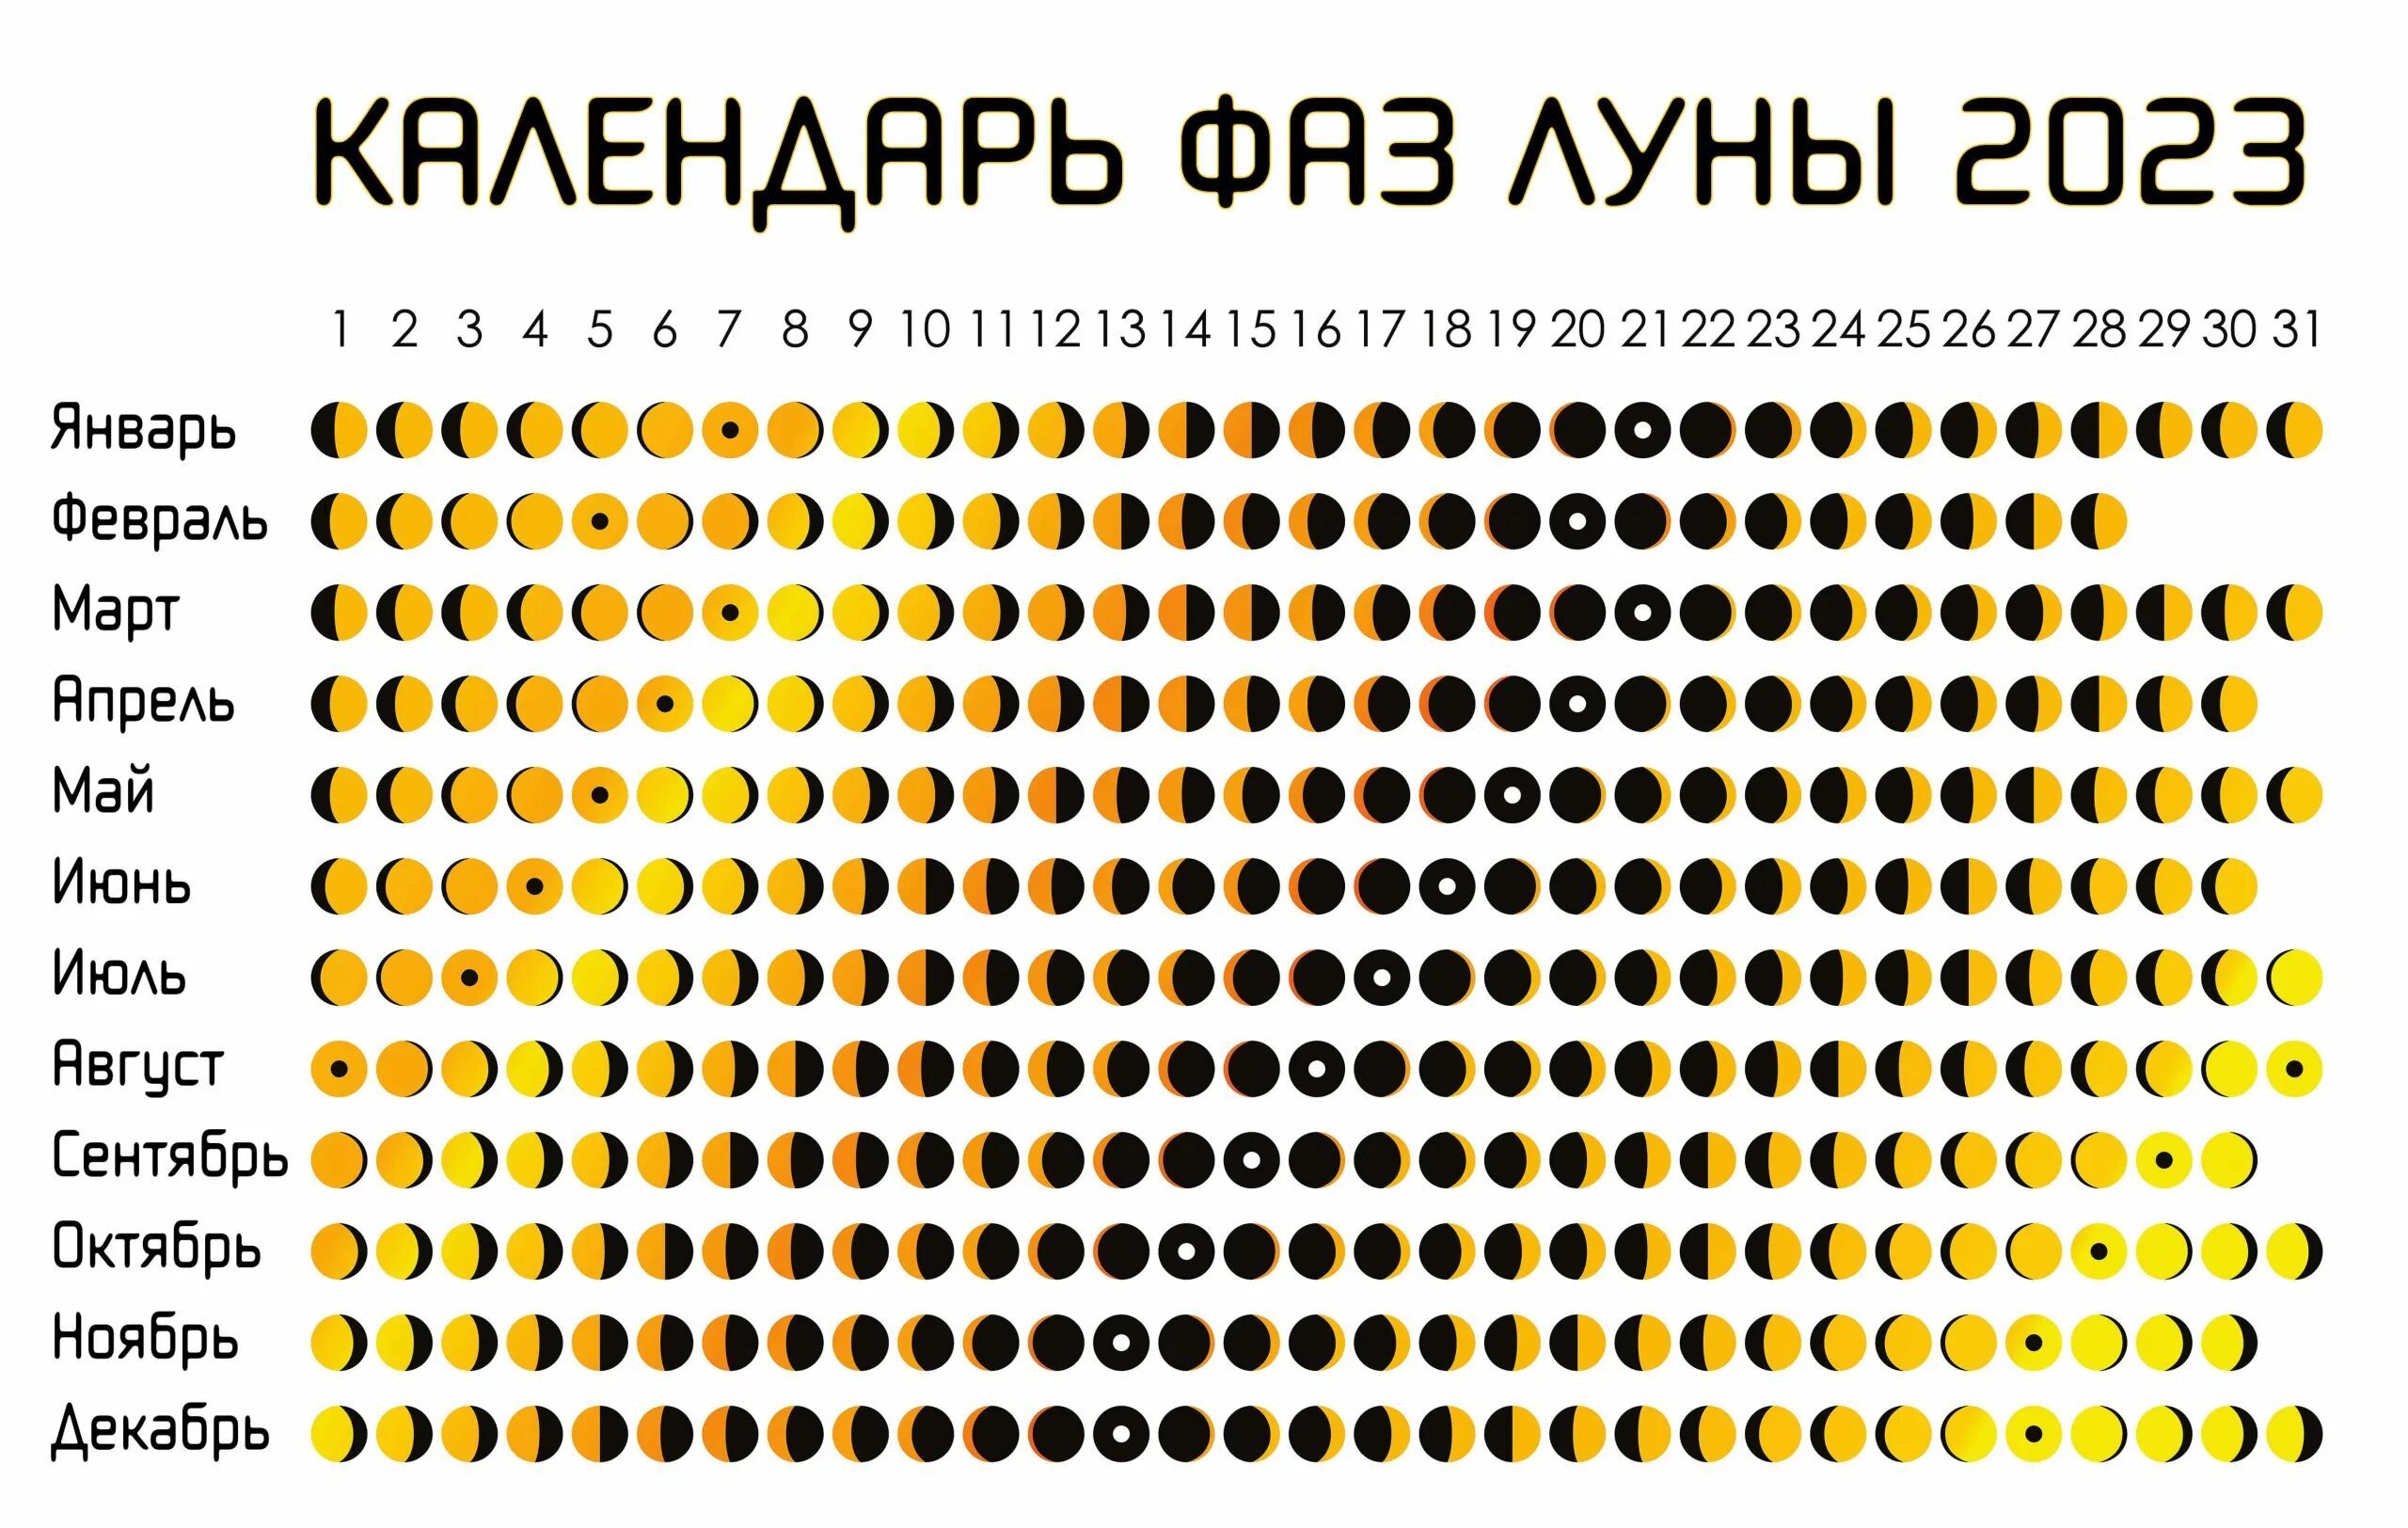 Календарь на 2023 год с фазами Луны. Календарь фаз Луны на 2023. Календарь Луны на 2023 год. Lunar Calendar 1.0.